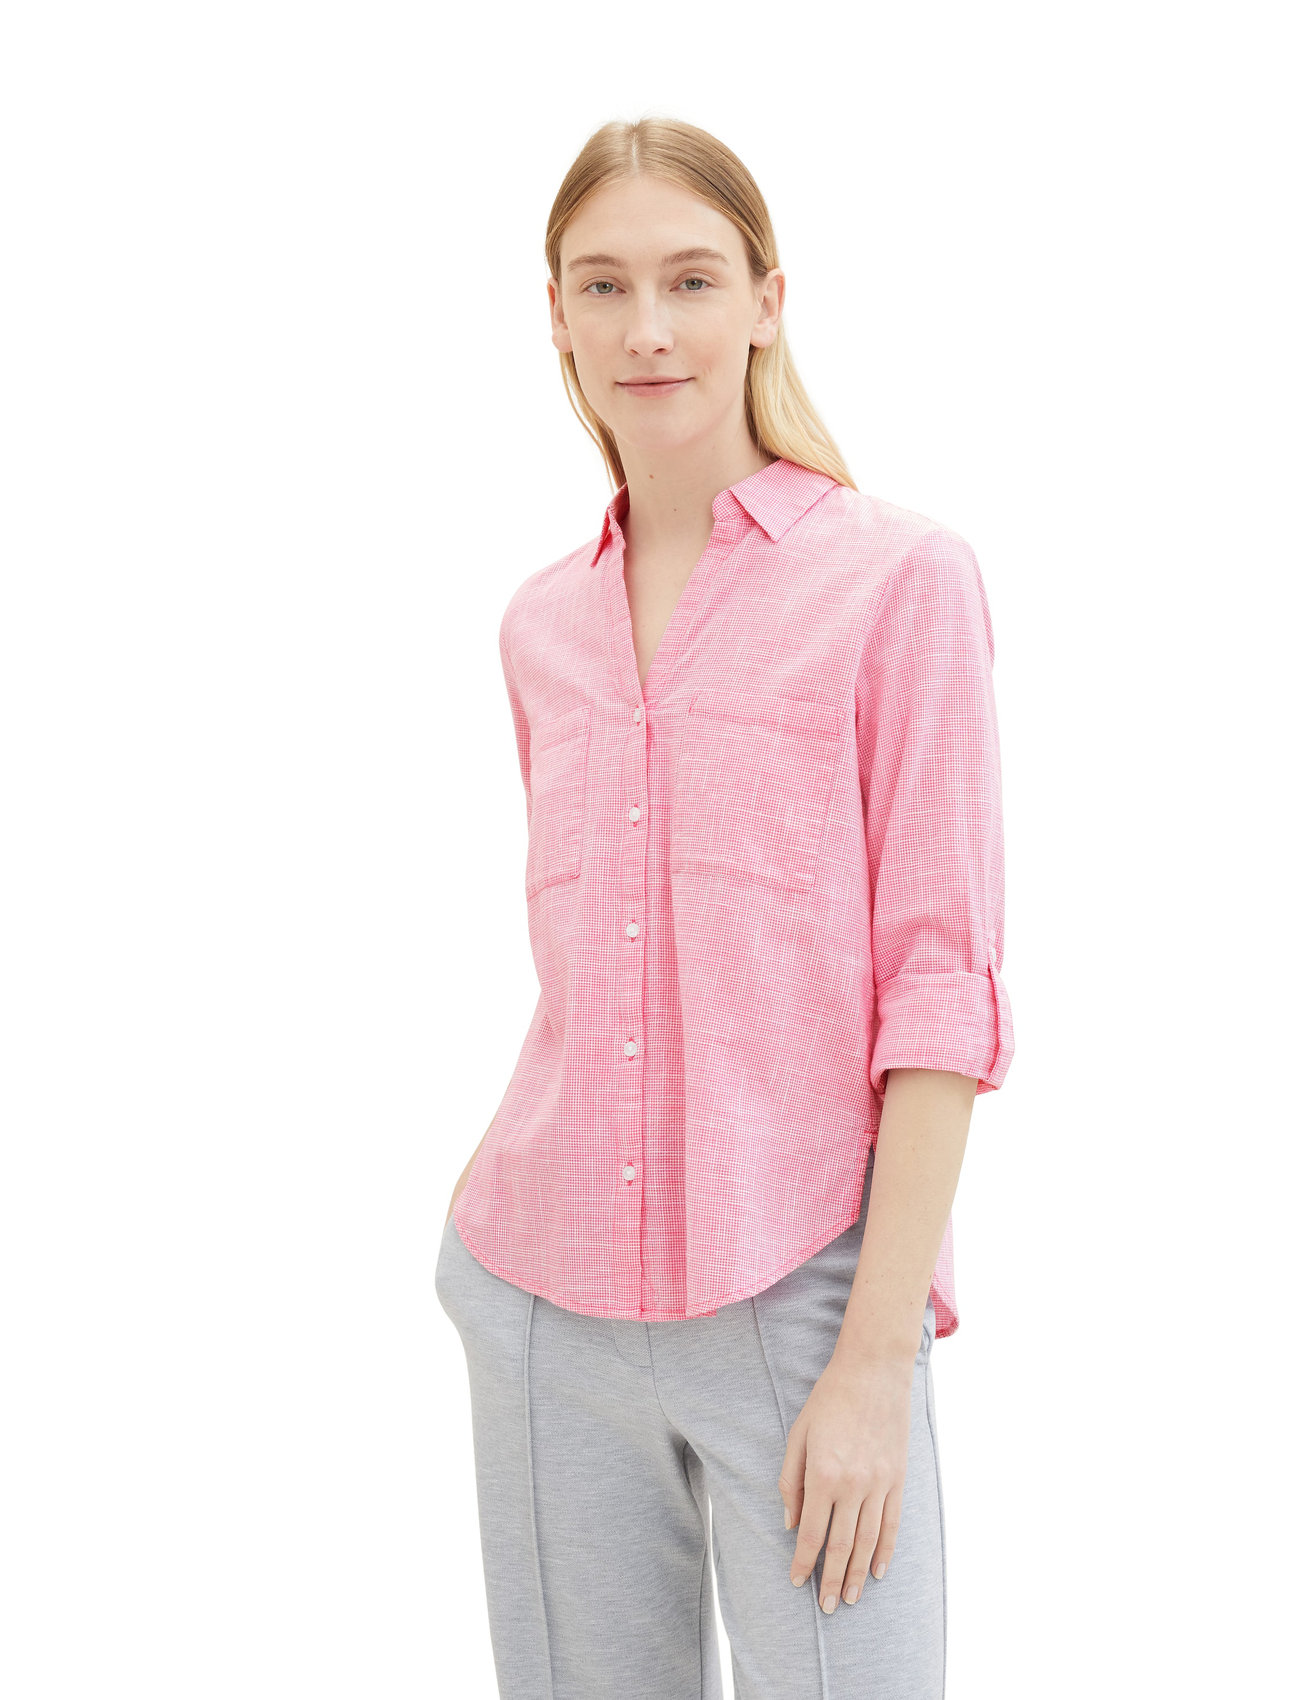 Tom Tailor - blouse with slub structure - marškiniai ilgomis rankovėmis - carmine pink - 1